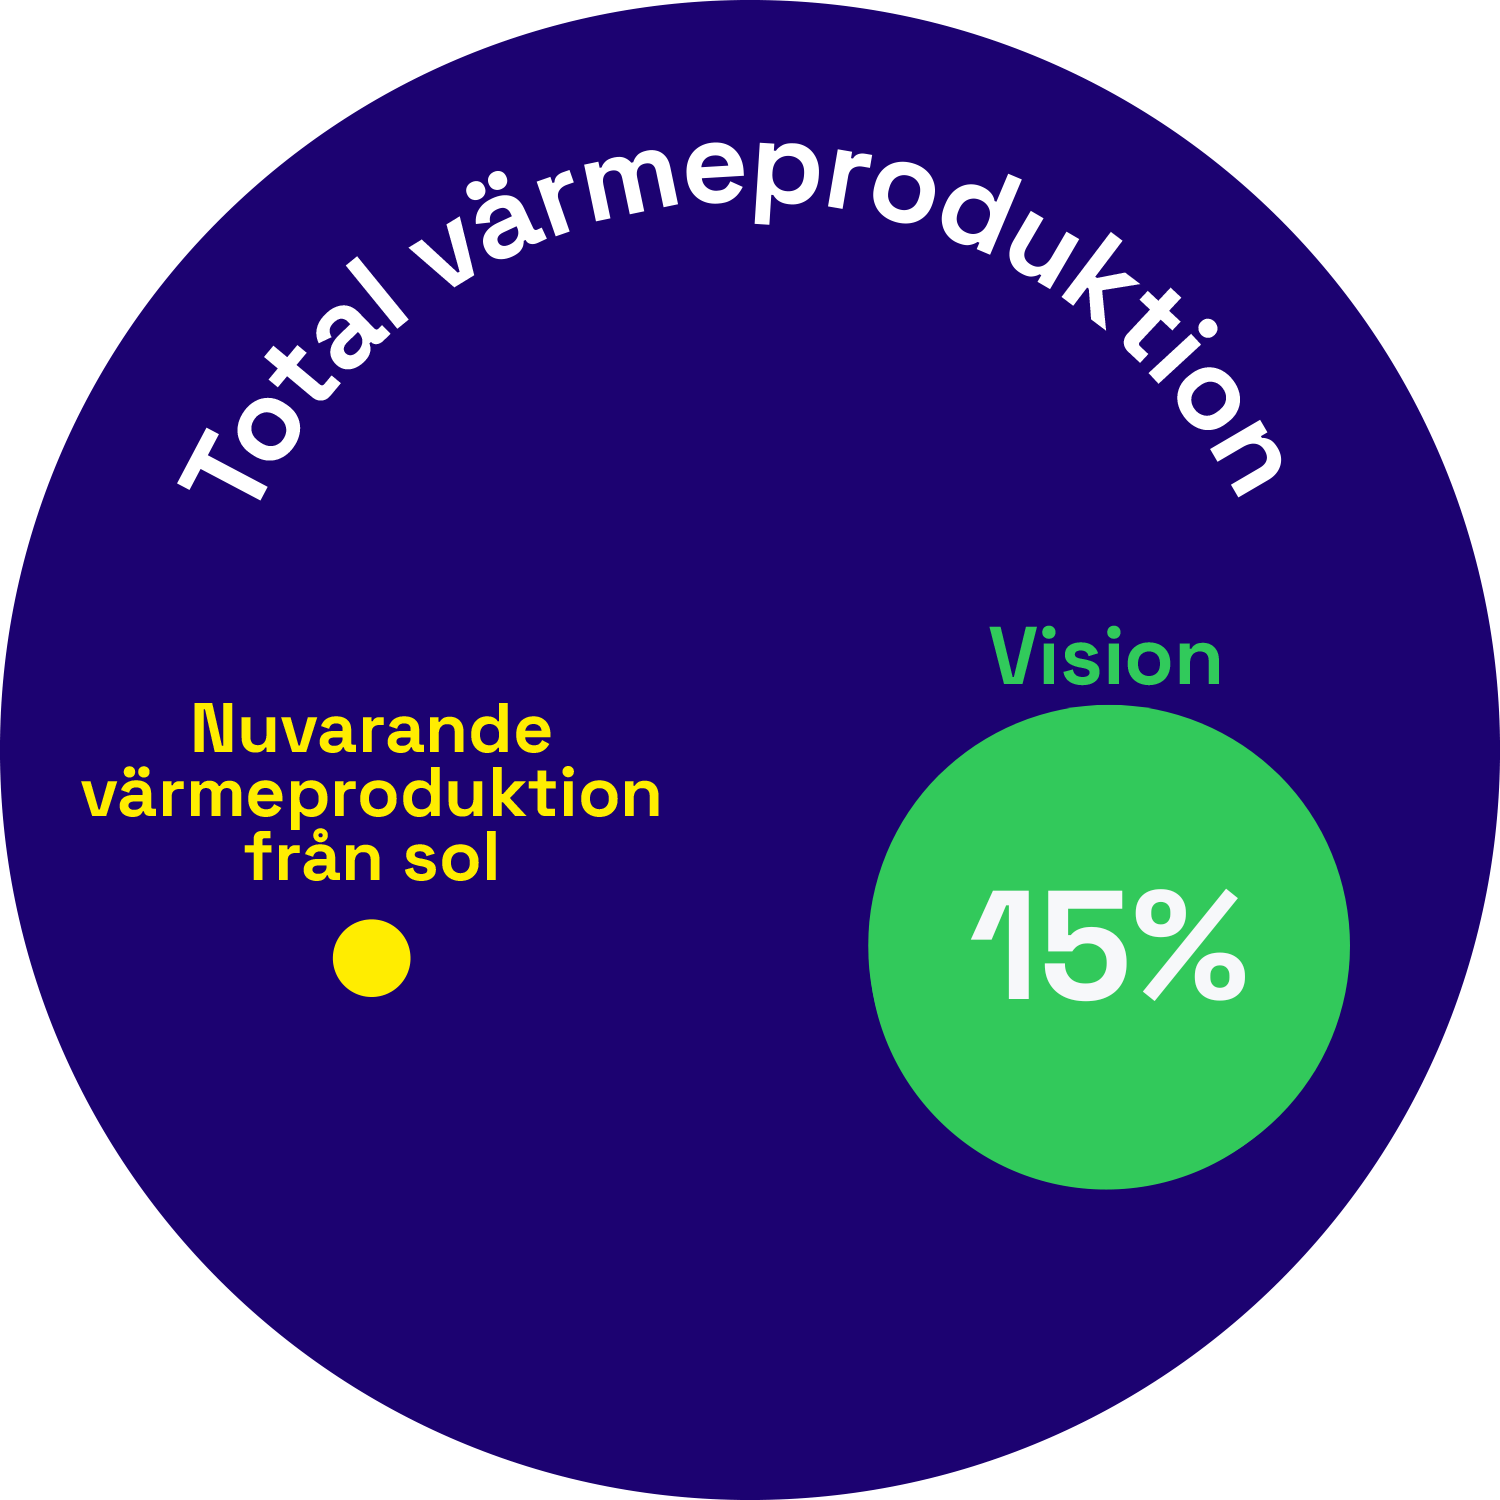 Total värmeproduktion från sol: vision 15%